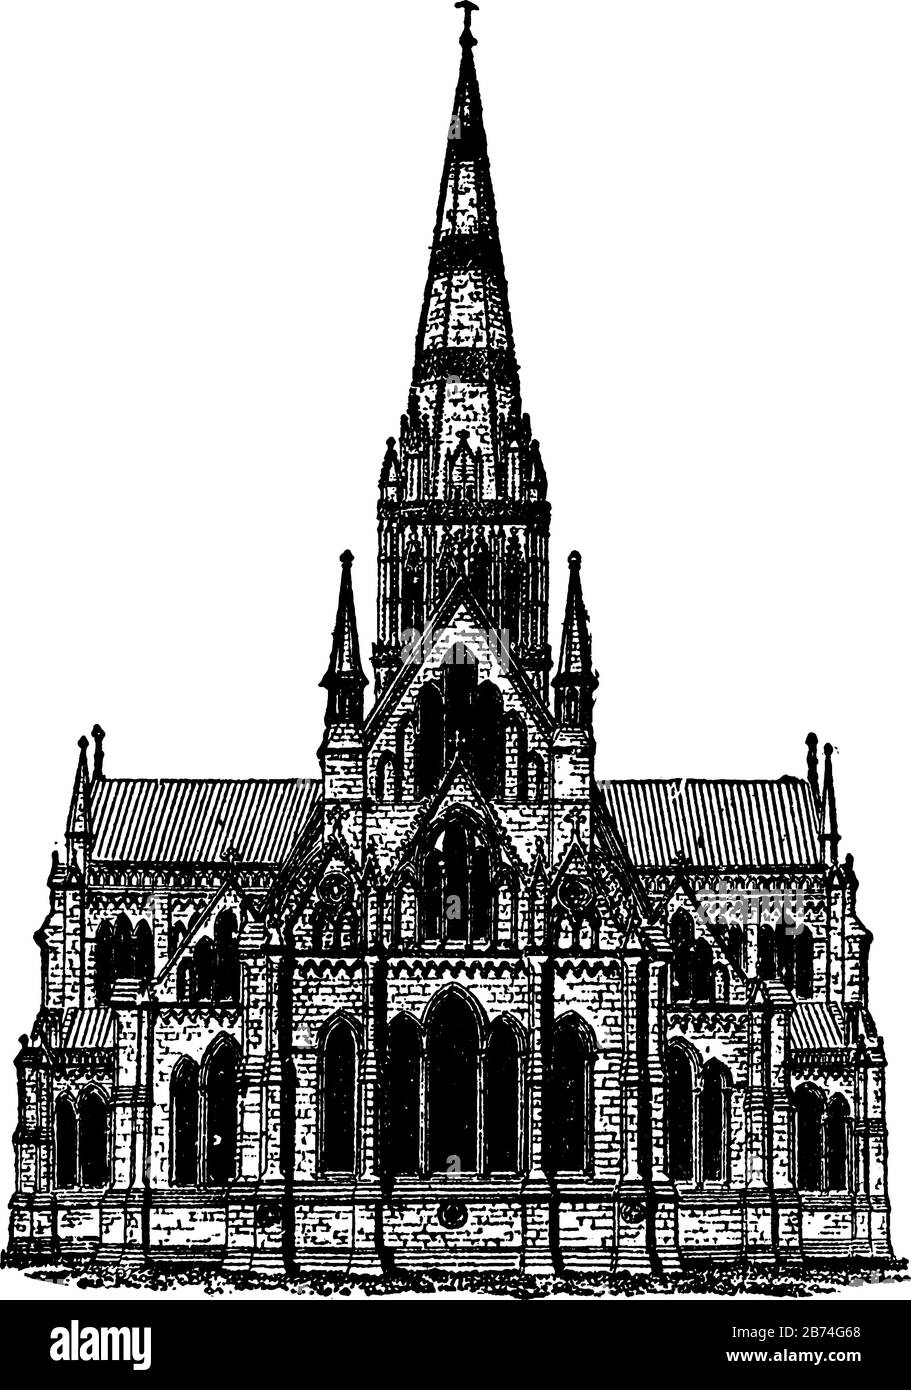 Architettura Gotica - Cattedrale di Salisbury, edificio di architettura, superbo esempio di stile, periodo relativamente breve, linea d'epoca disegno o engra Illustrazione Vettoriale